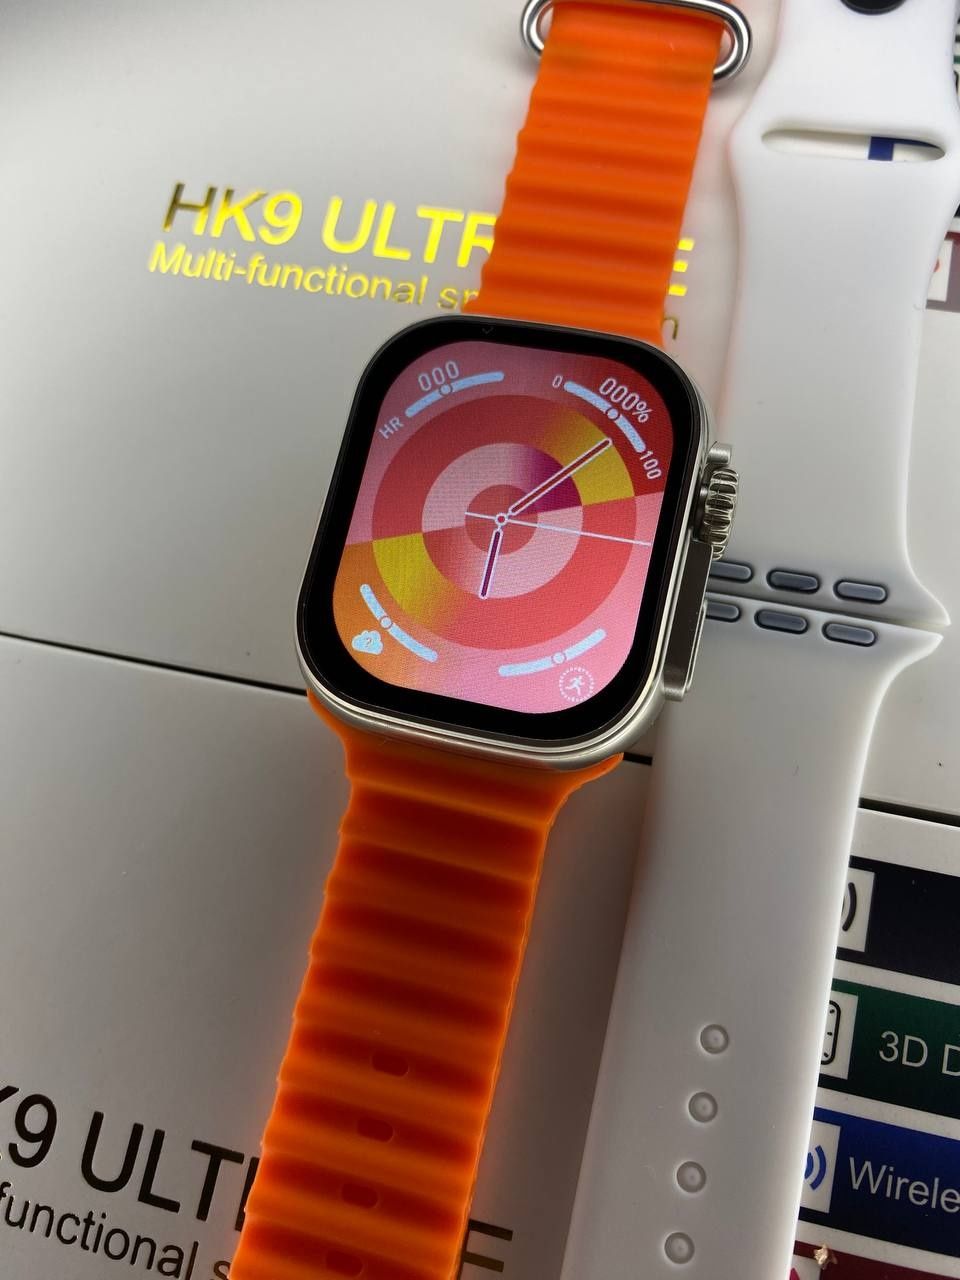 Smart watch HK9 ULTRA SE NEW Епл Часы Смарт Годинник